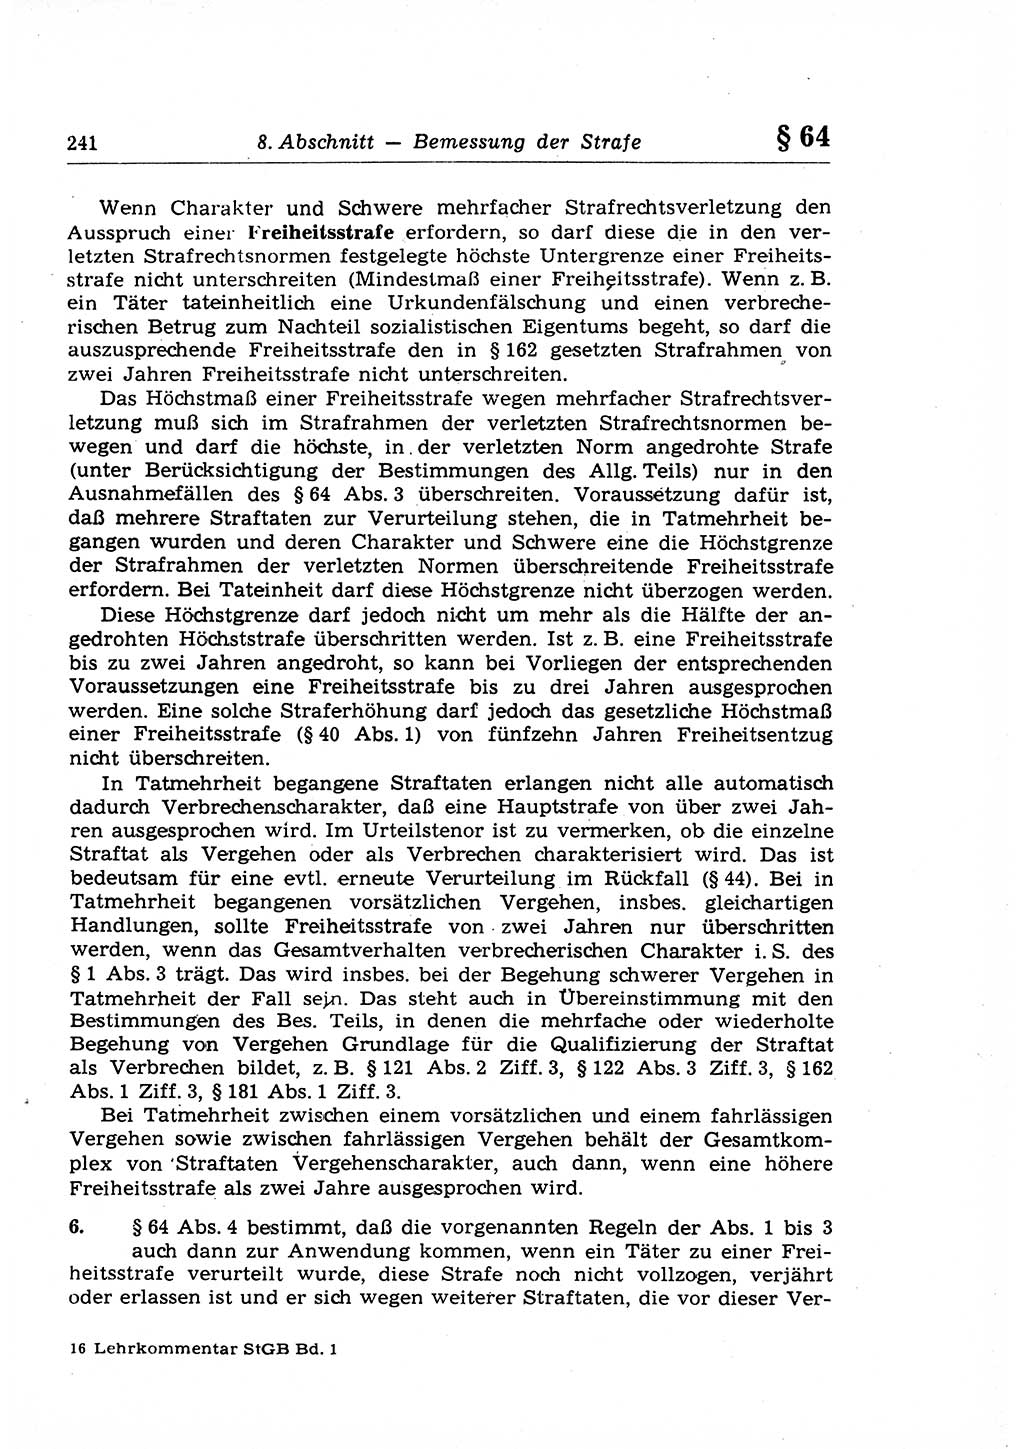 Strafrecht der Deutschen Demokratischen Republik (DDR), Lehrkommentar zum Strafgesetzbuch (StGB), Allgemeiner Teil 1969, Seite 241 (Strafr. DDR Lehrkomm. StGB AT 1969, S. 241)